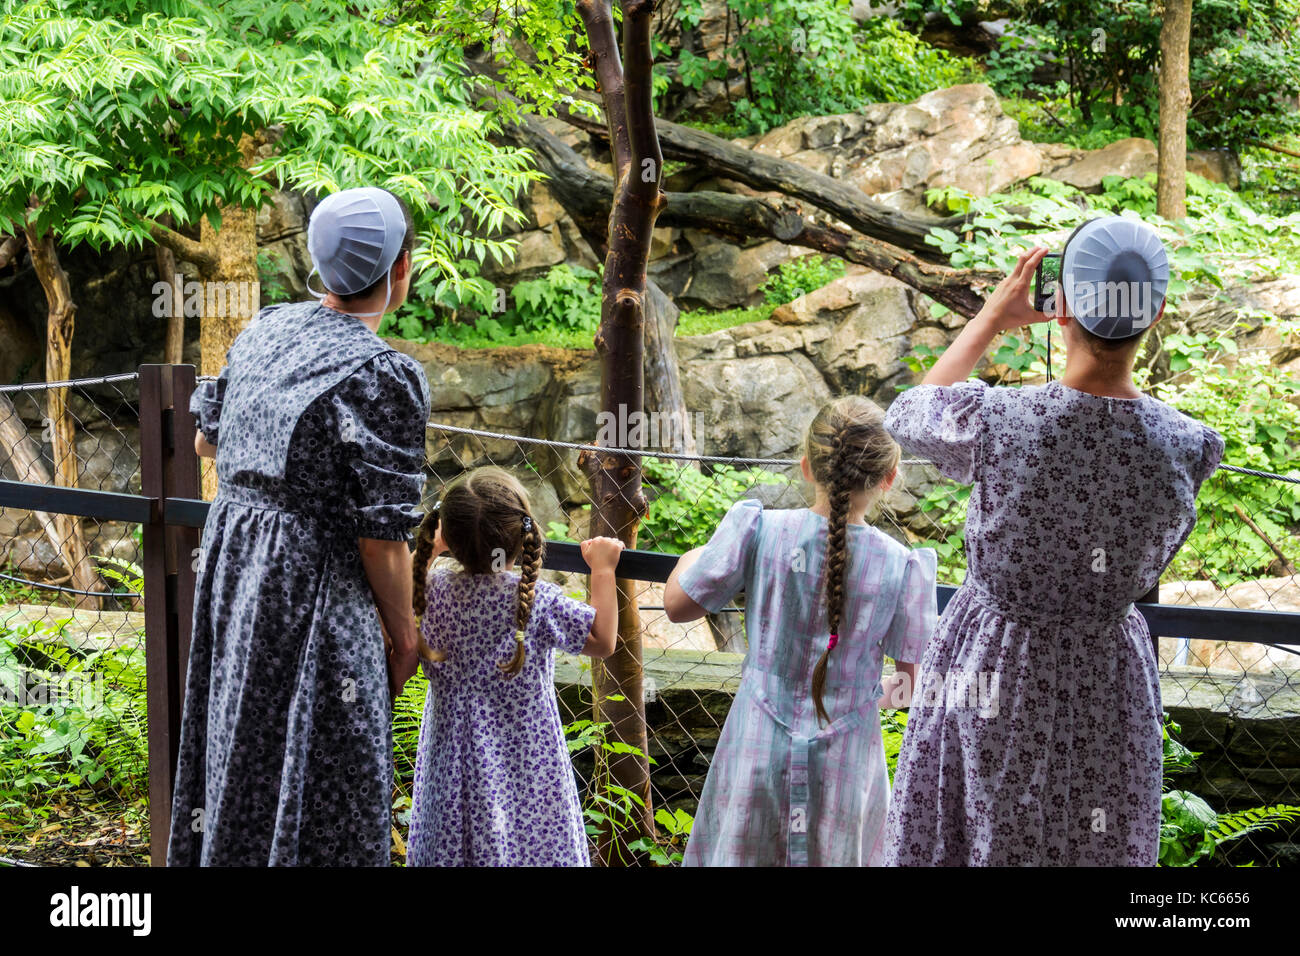 Washington DC,National Zoo,Giant Panda,mostra collezione Mennonite,famiglia genitori genitori bambini bambini,vestito tradizionale,madre, Foto Stock